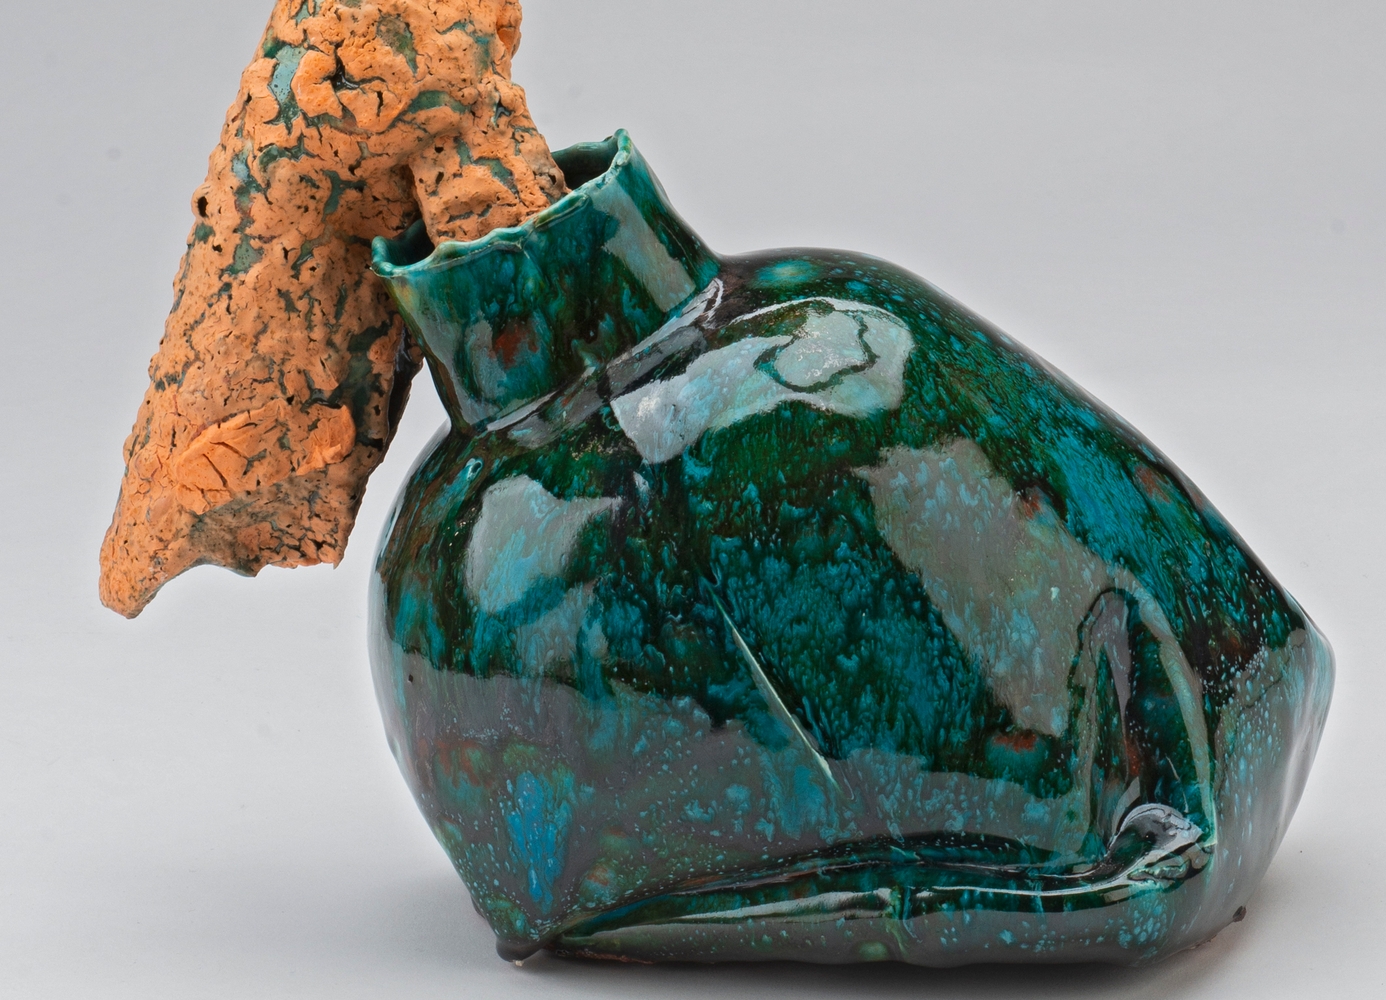 Vaselignende keramikkobjekt med grønn glasur, med en oransjefarget form som stikker ut av åpningen. 